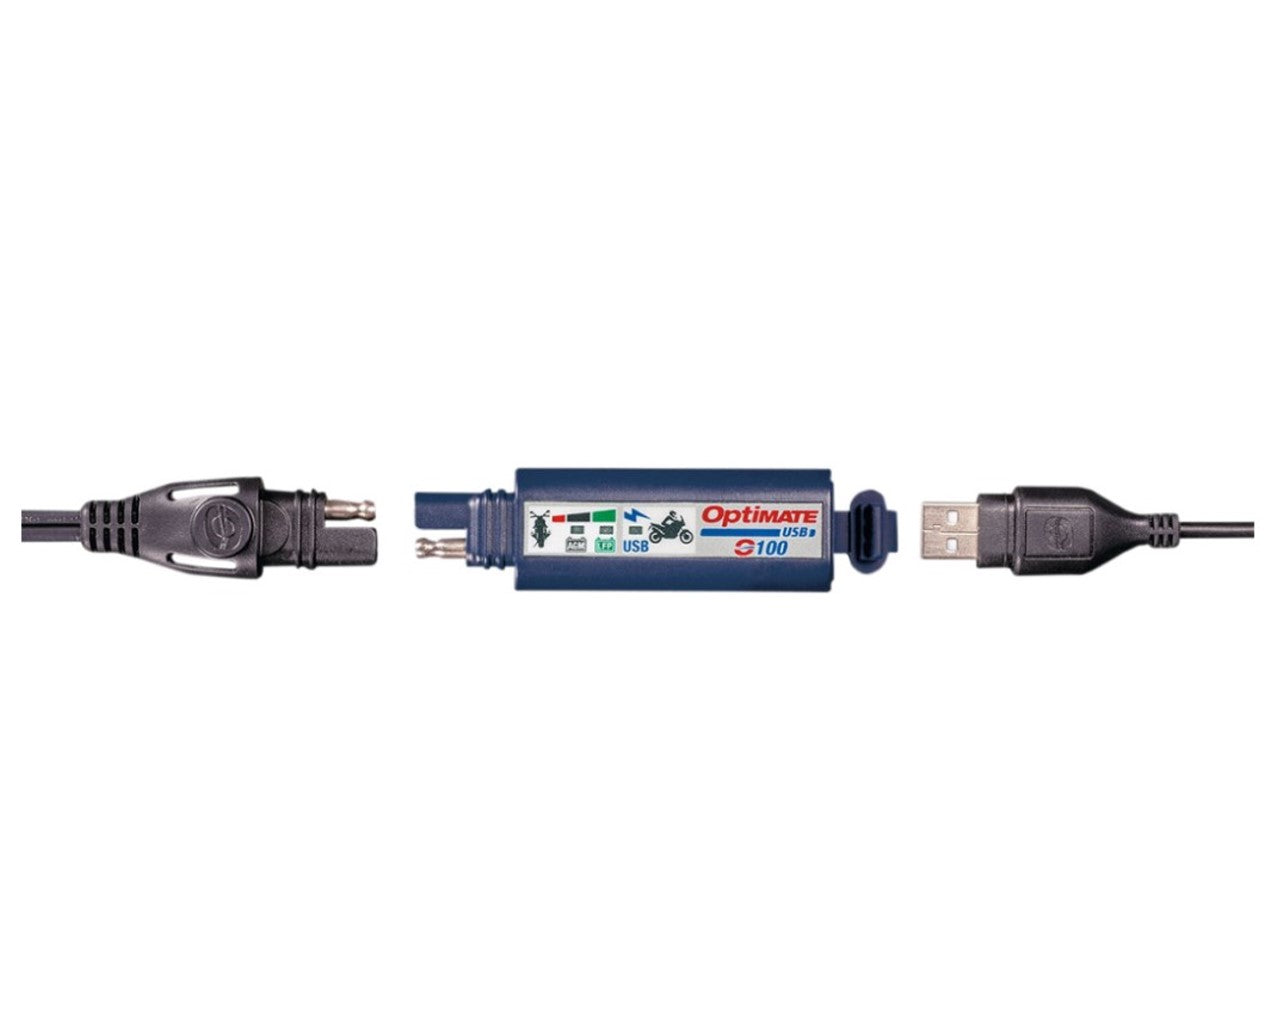 Optimate USB Charger For Battery Tender Lead  0-100V3